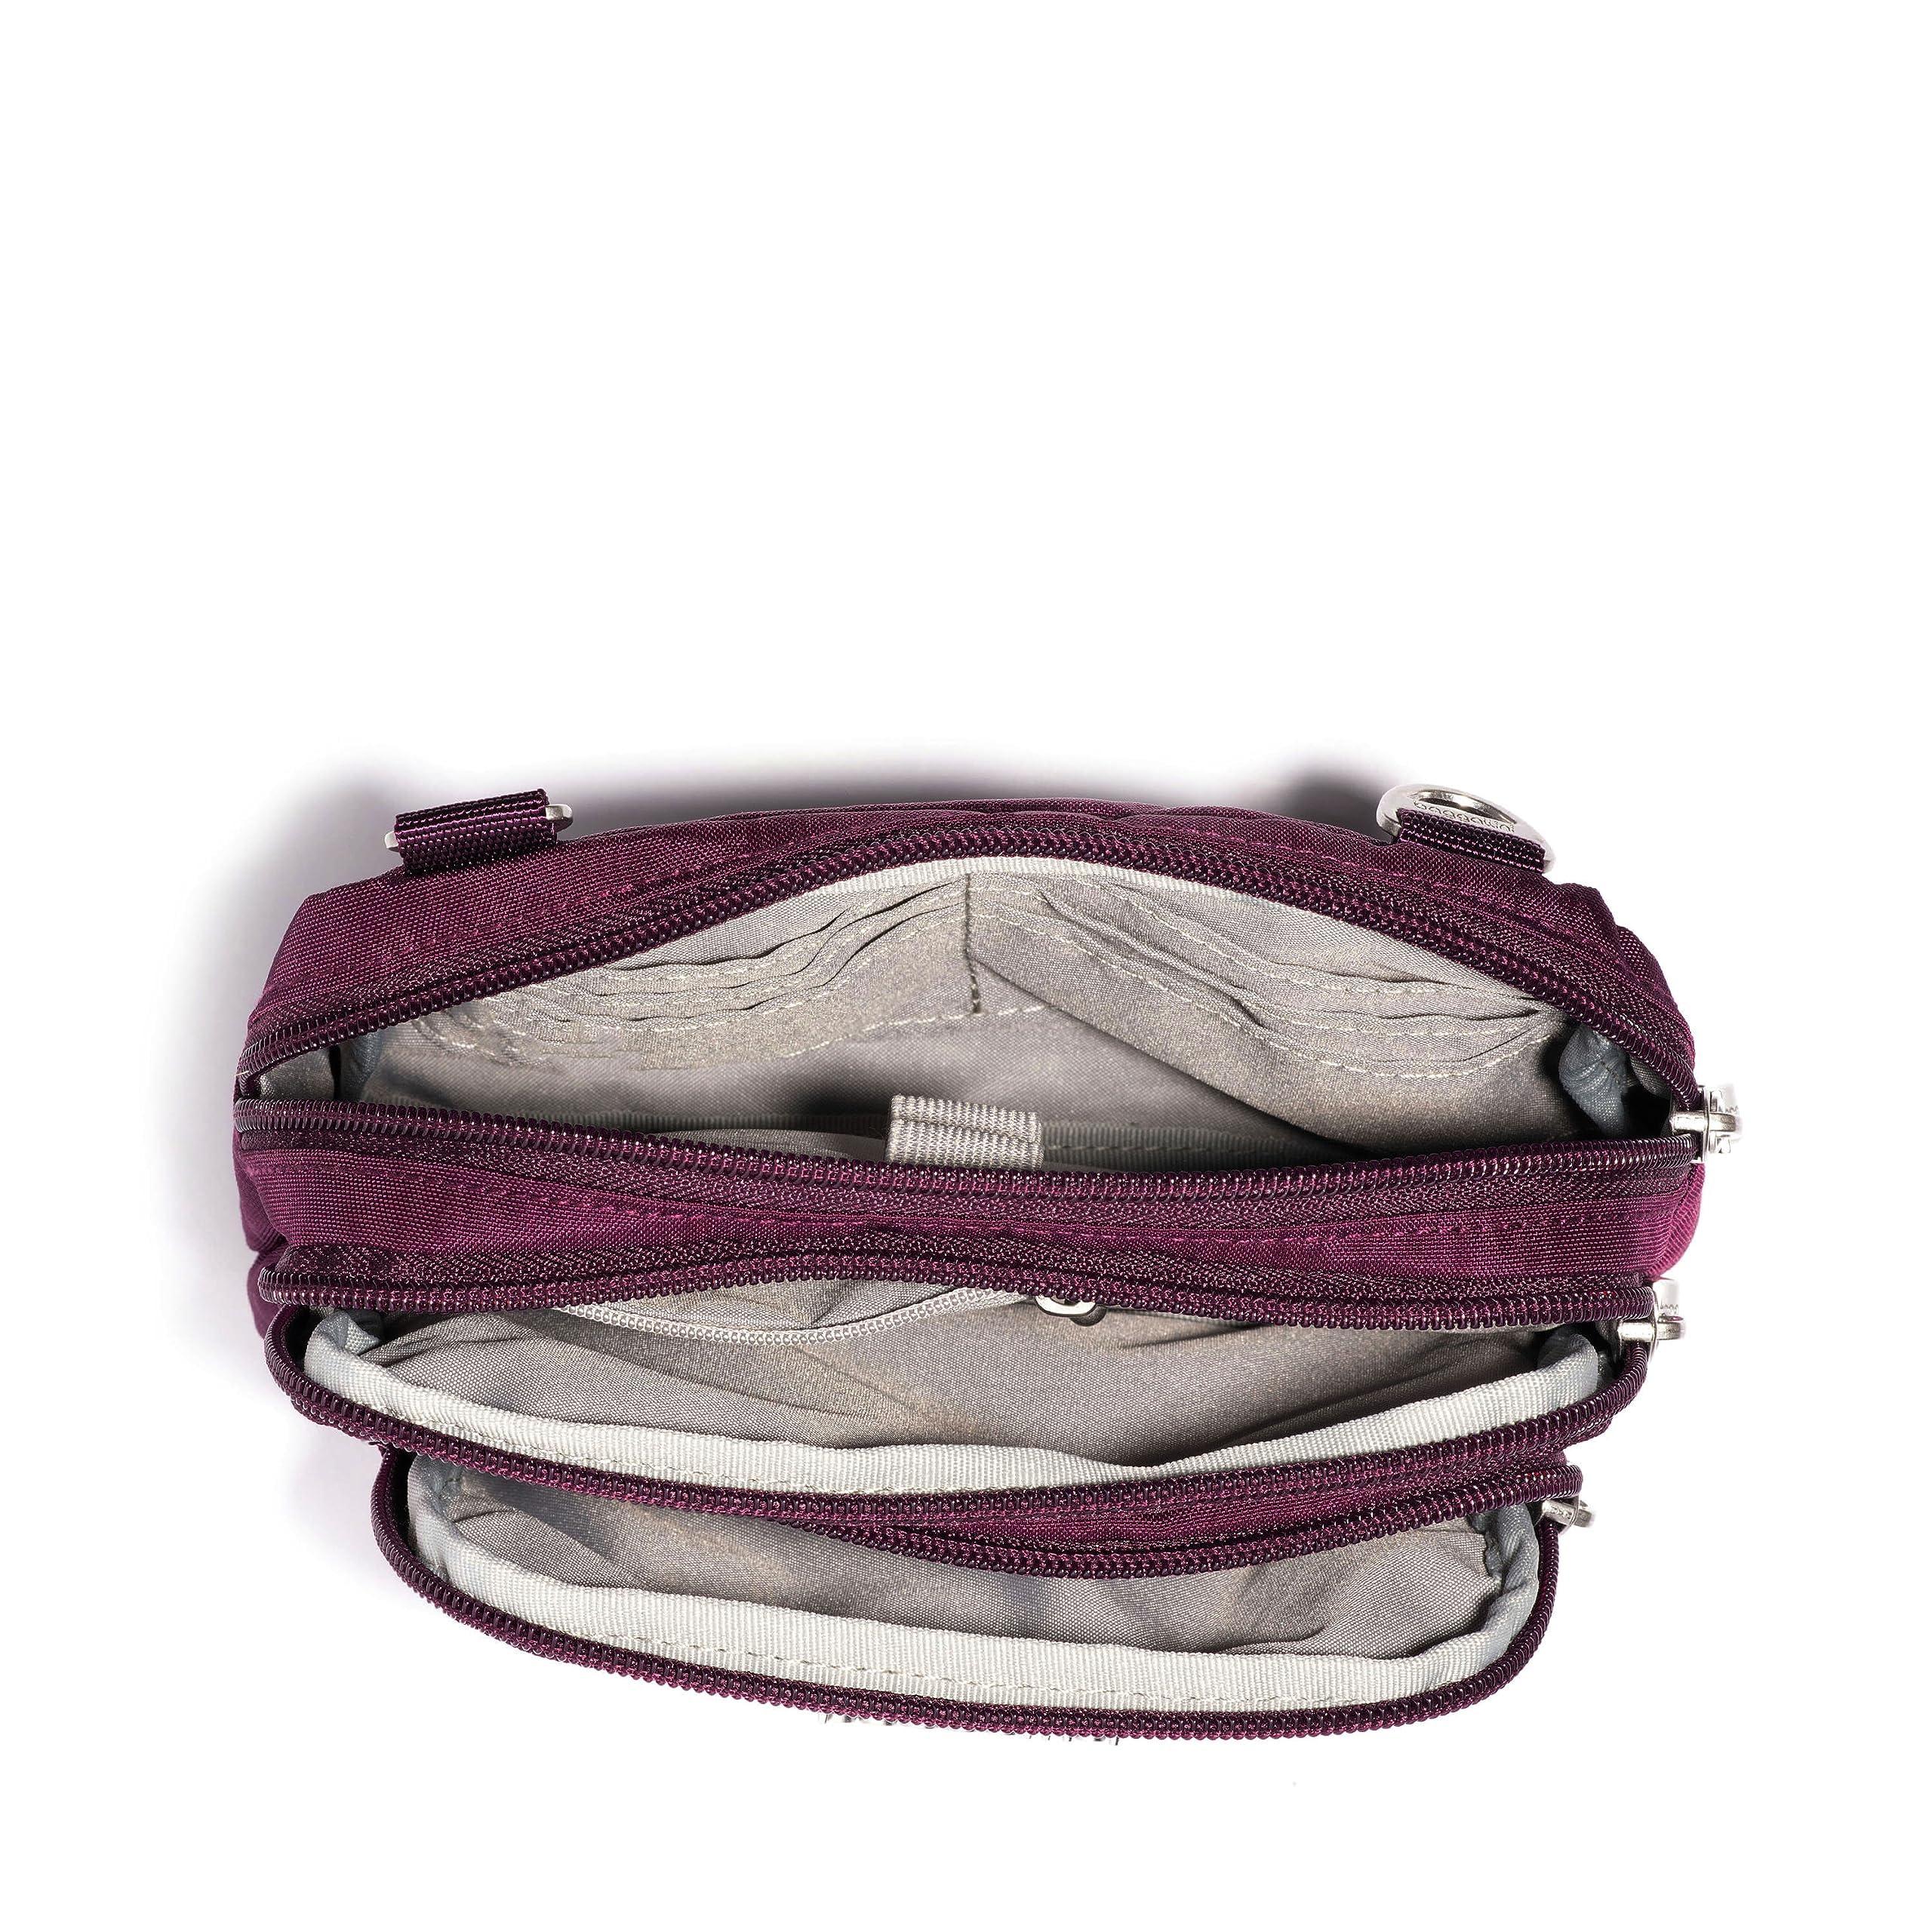 Baggallini Legacy Triple Zip Bagg  Cross body handbags, Baggallini, Red crossbody  bag